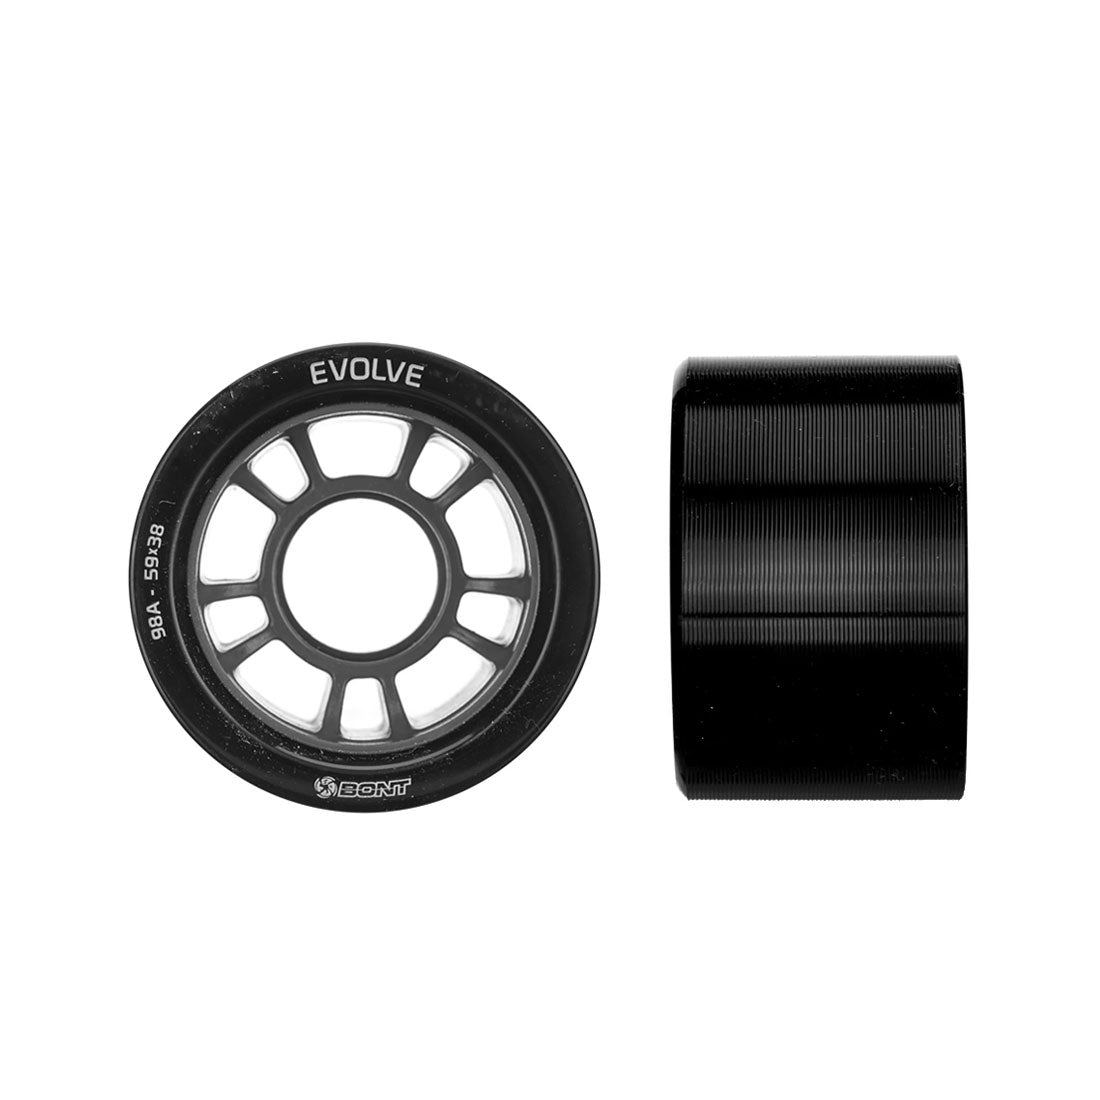 Bont Evolve Derby 59x38mm 98a 4pk - Black Roller Skate Wheels